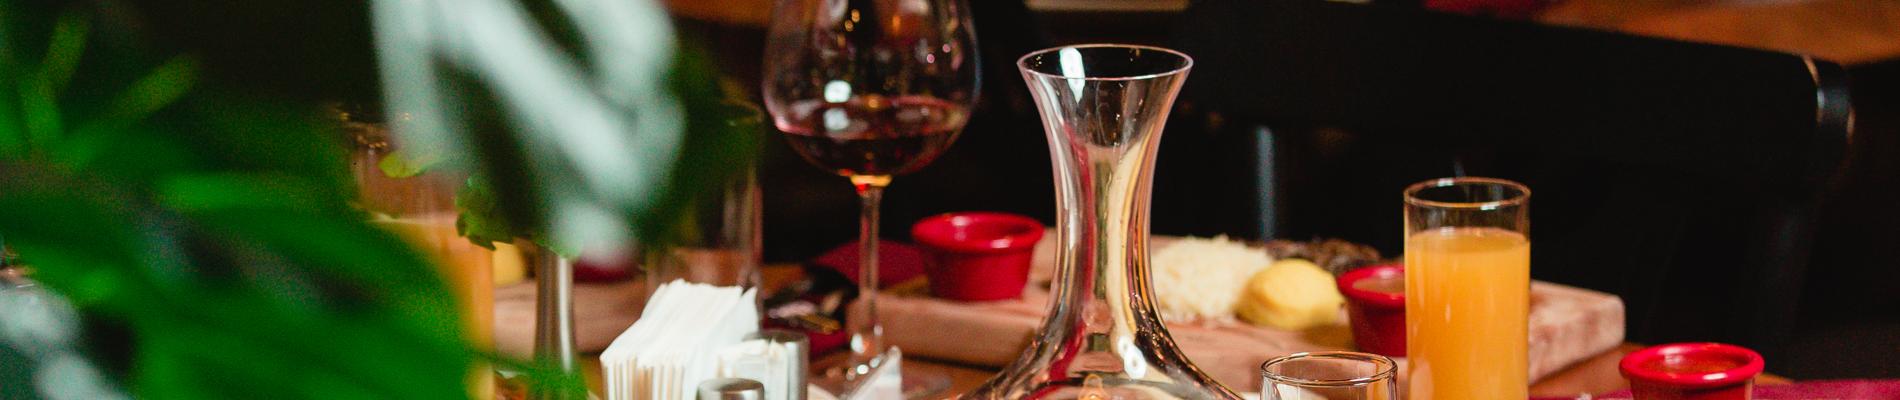 Mesa com taça de vinho, guardanapos e comida